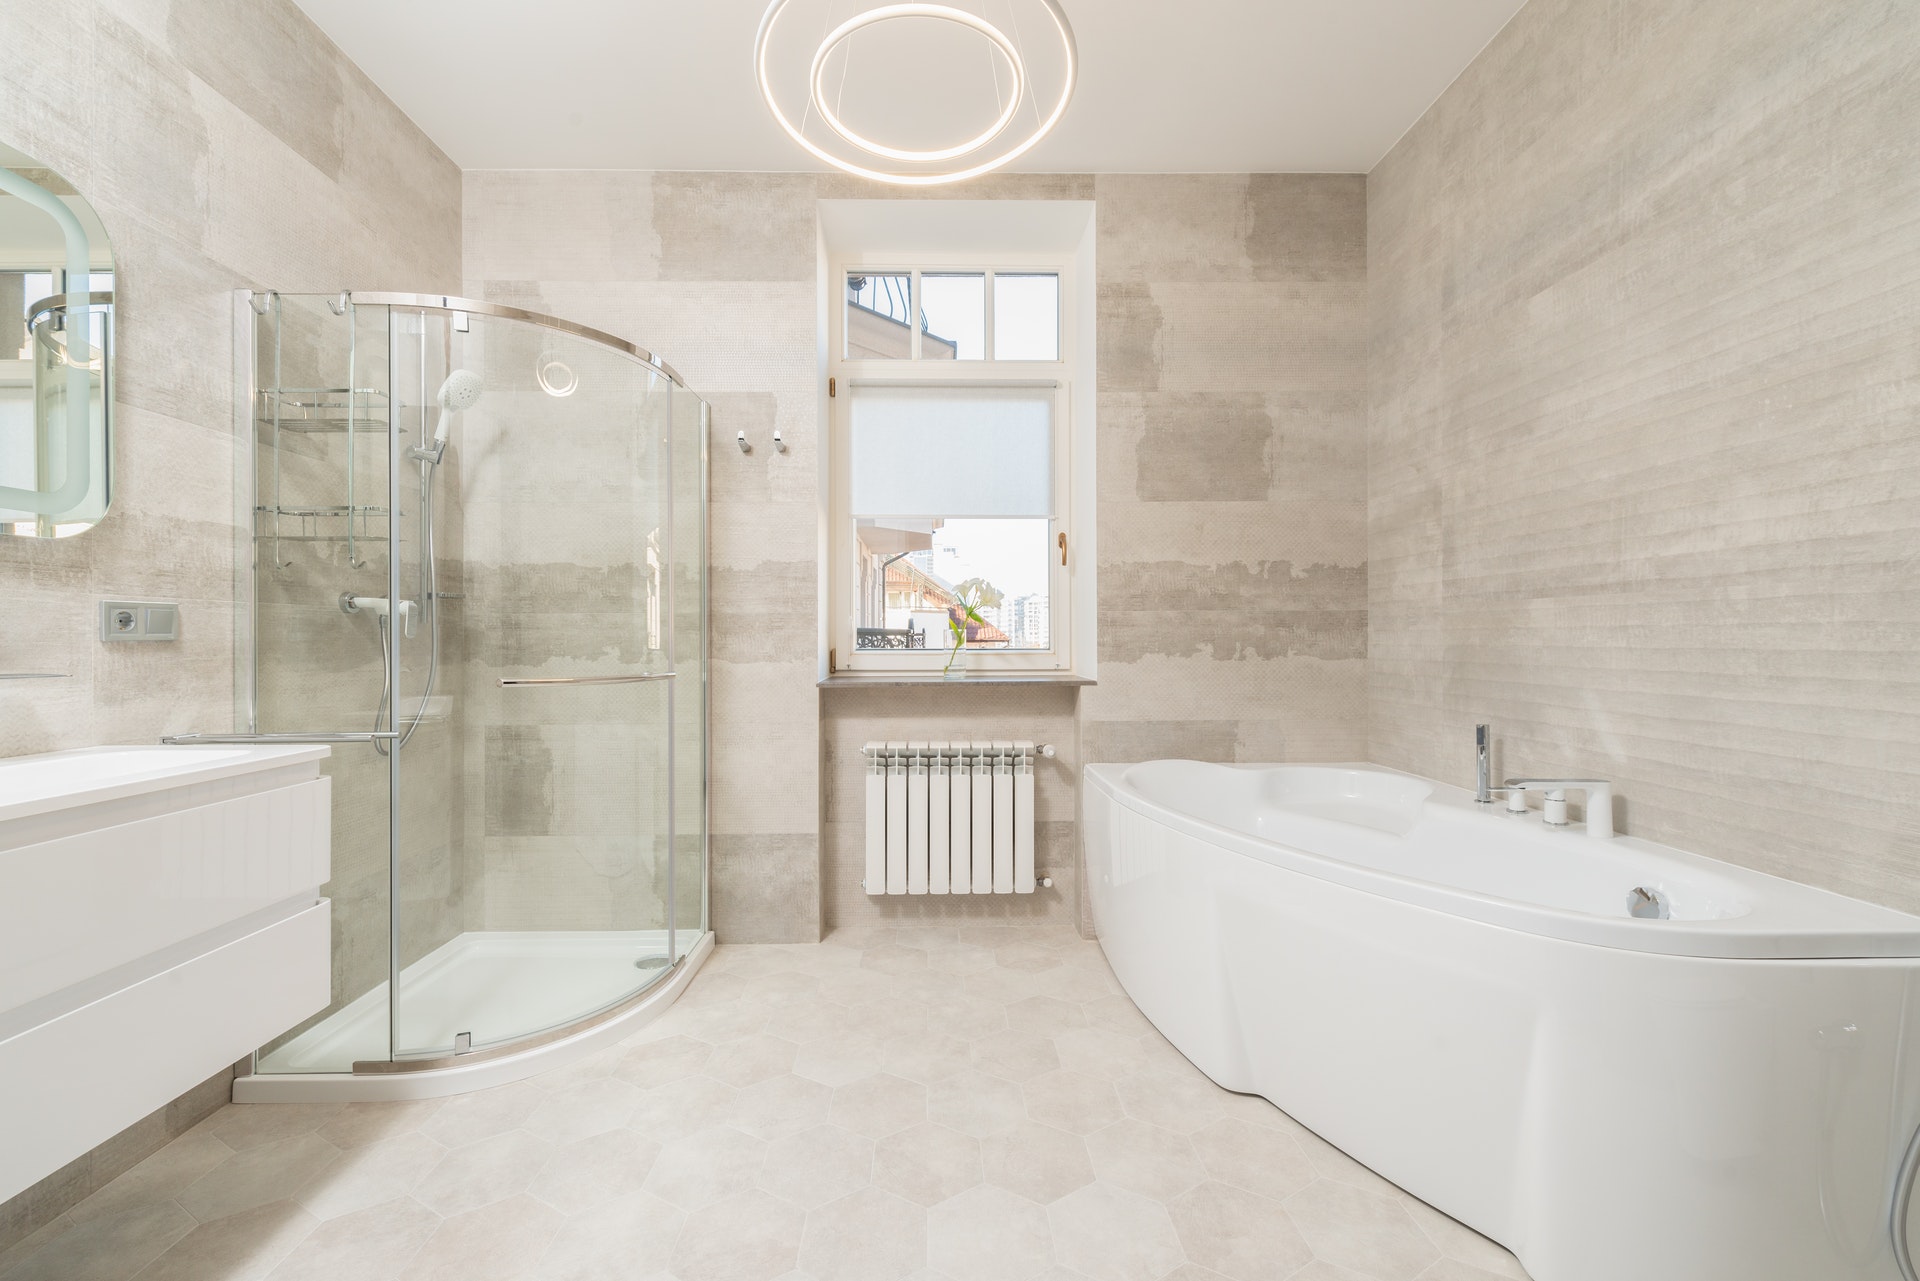 Viglacera Platinum - xu hướng gạch ốp phòng tắm năm 2024 là lựa chọn hàng đầu cho sự nâng tầm không gian tắm của bạn. Với chất lượng và kiểu dáng đẳng cấp, một trong những sản phẩm hàng đầu ở Việt Nam với nhiều ưu đãi hấp dẫn.